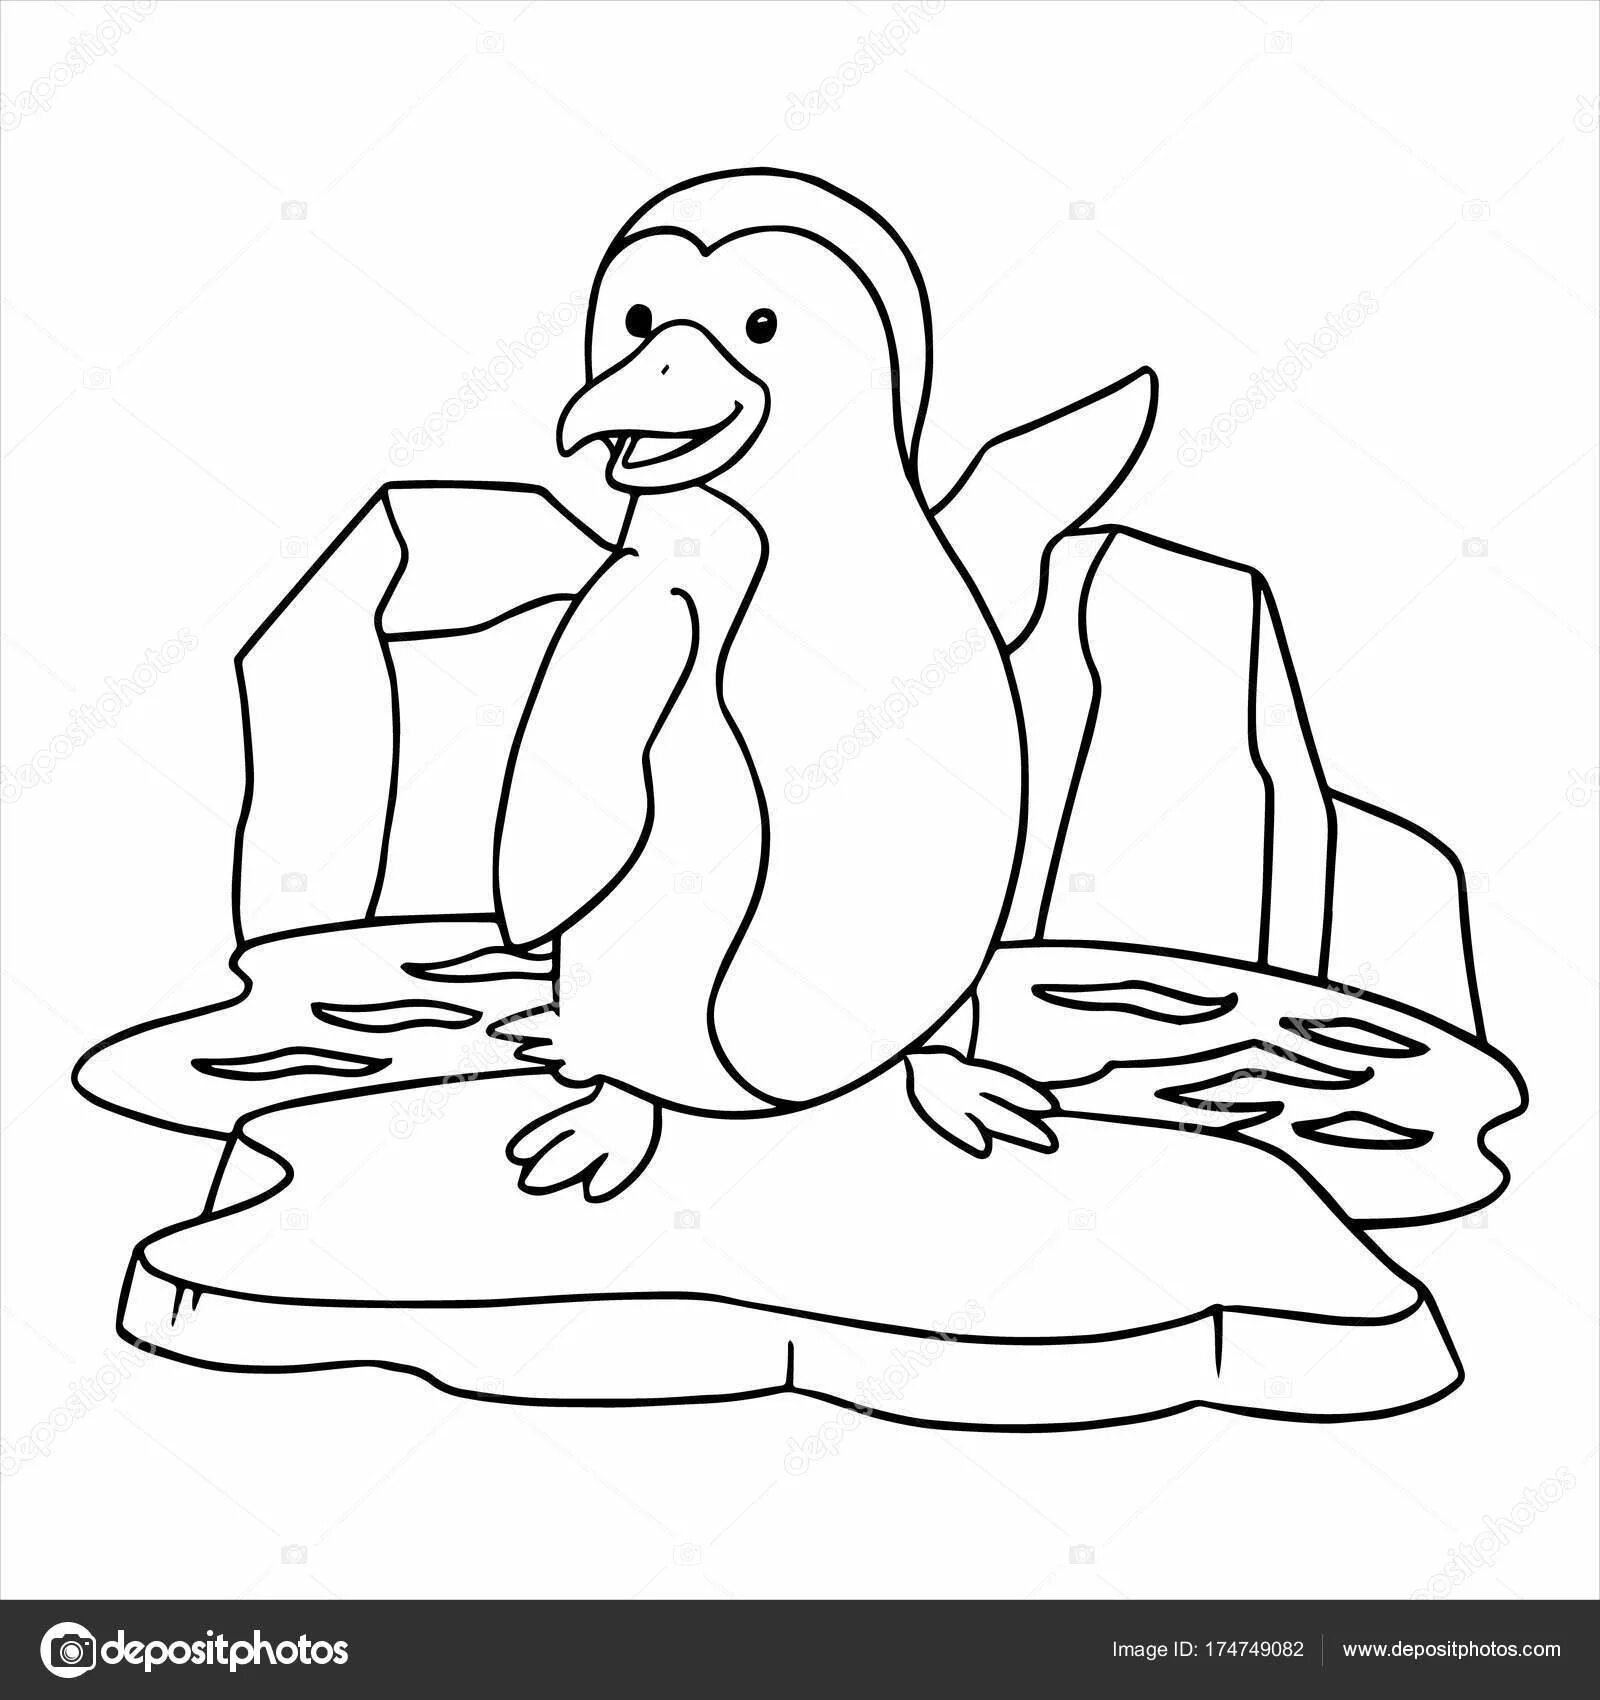 Раскраска экзотический пингвин на льдине для детей